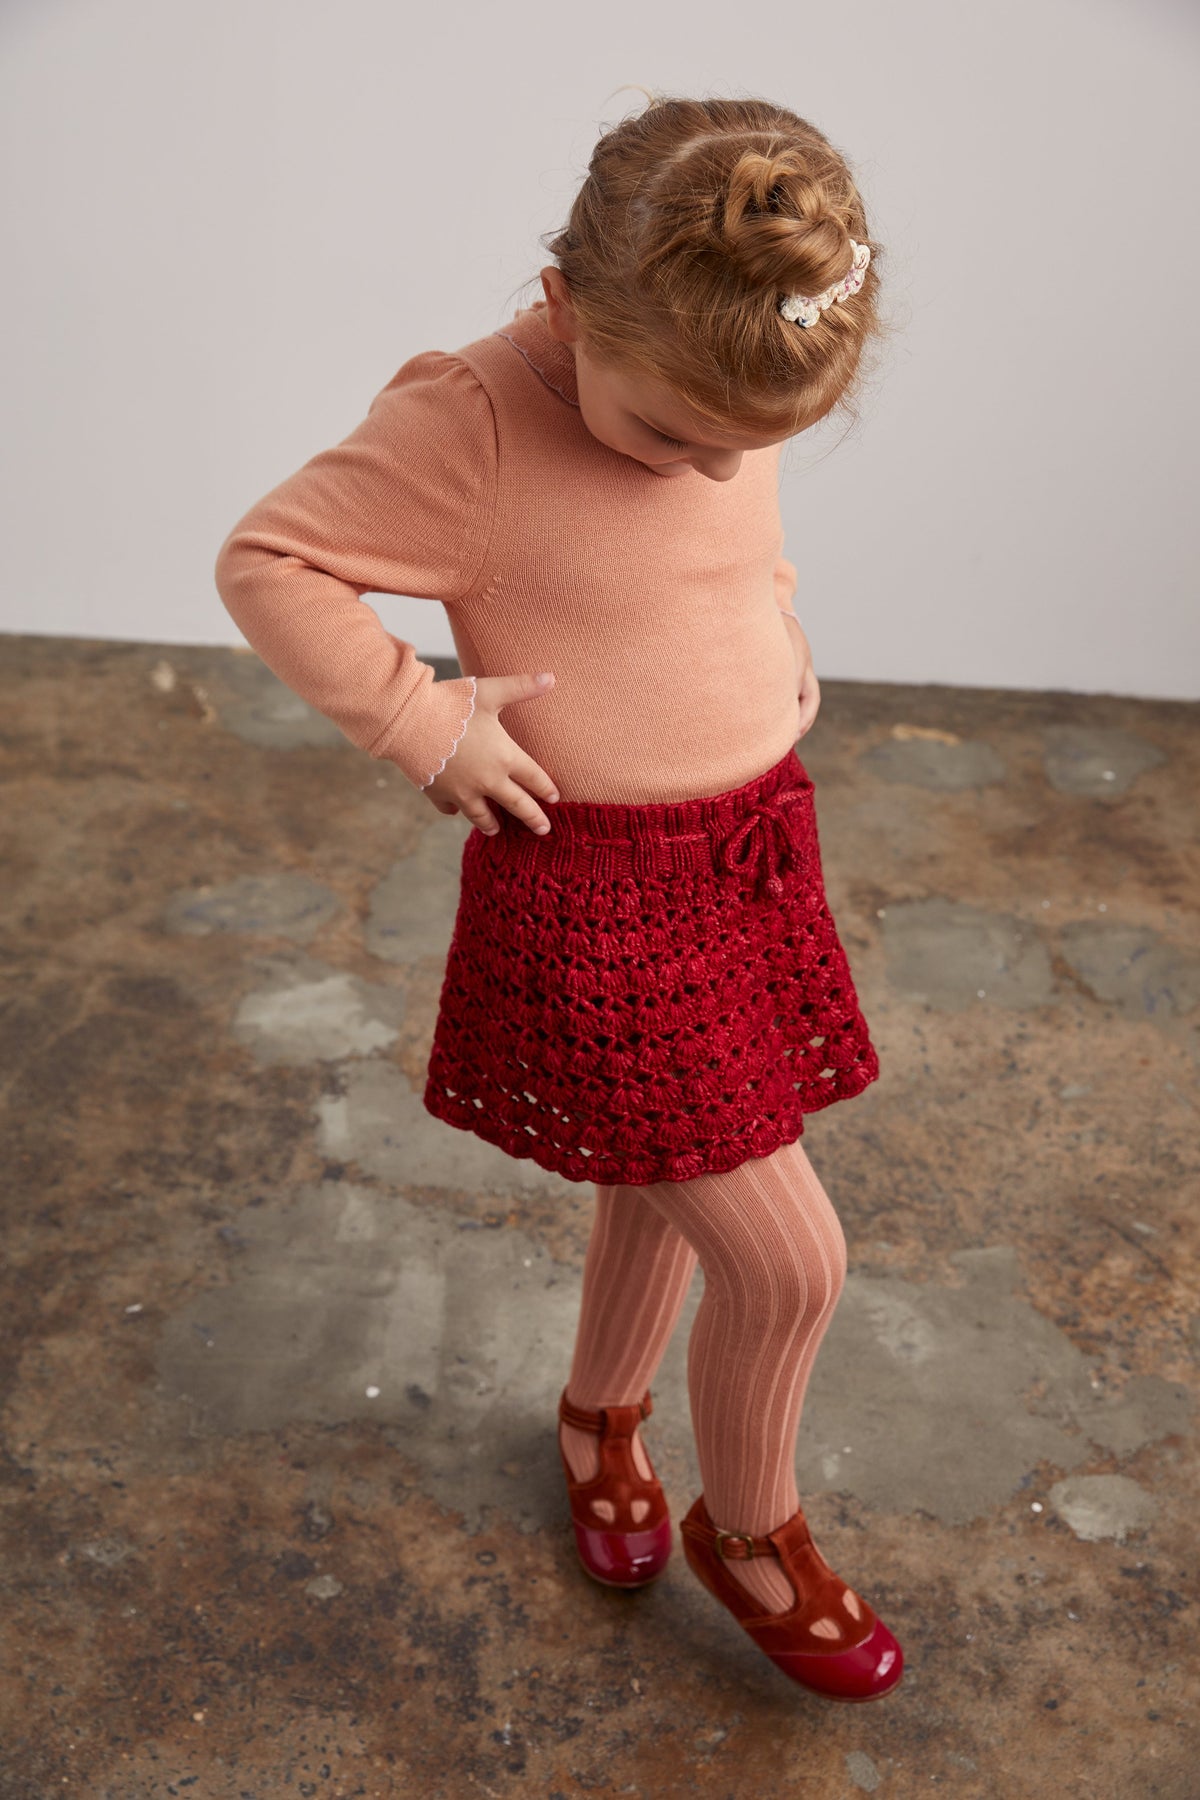 Crochet Skating Skirt